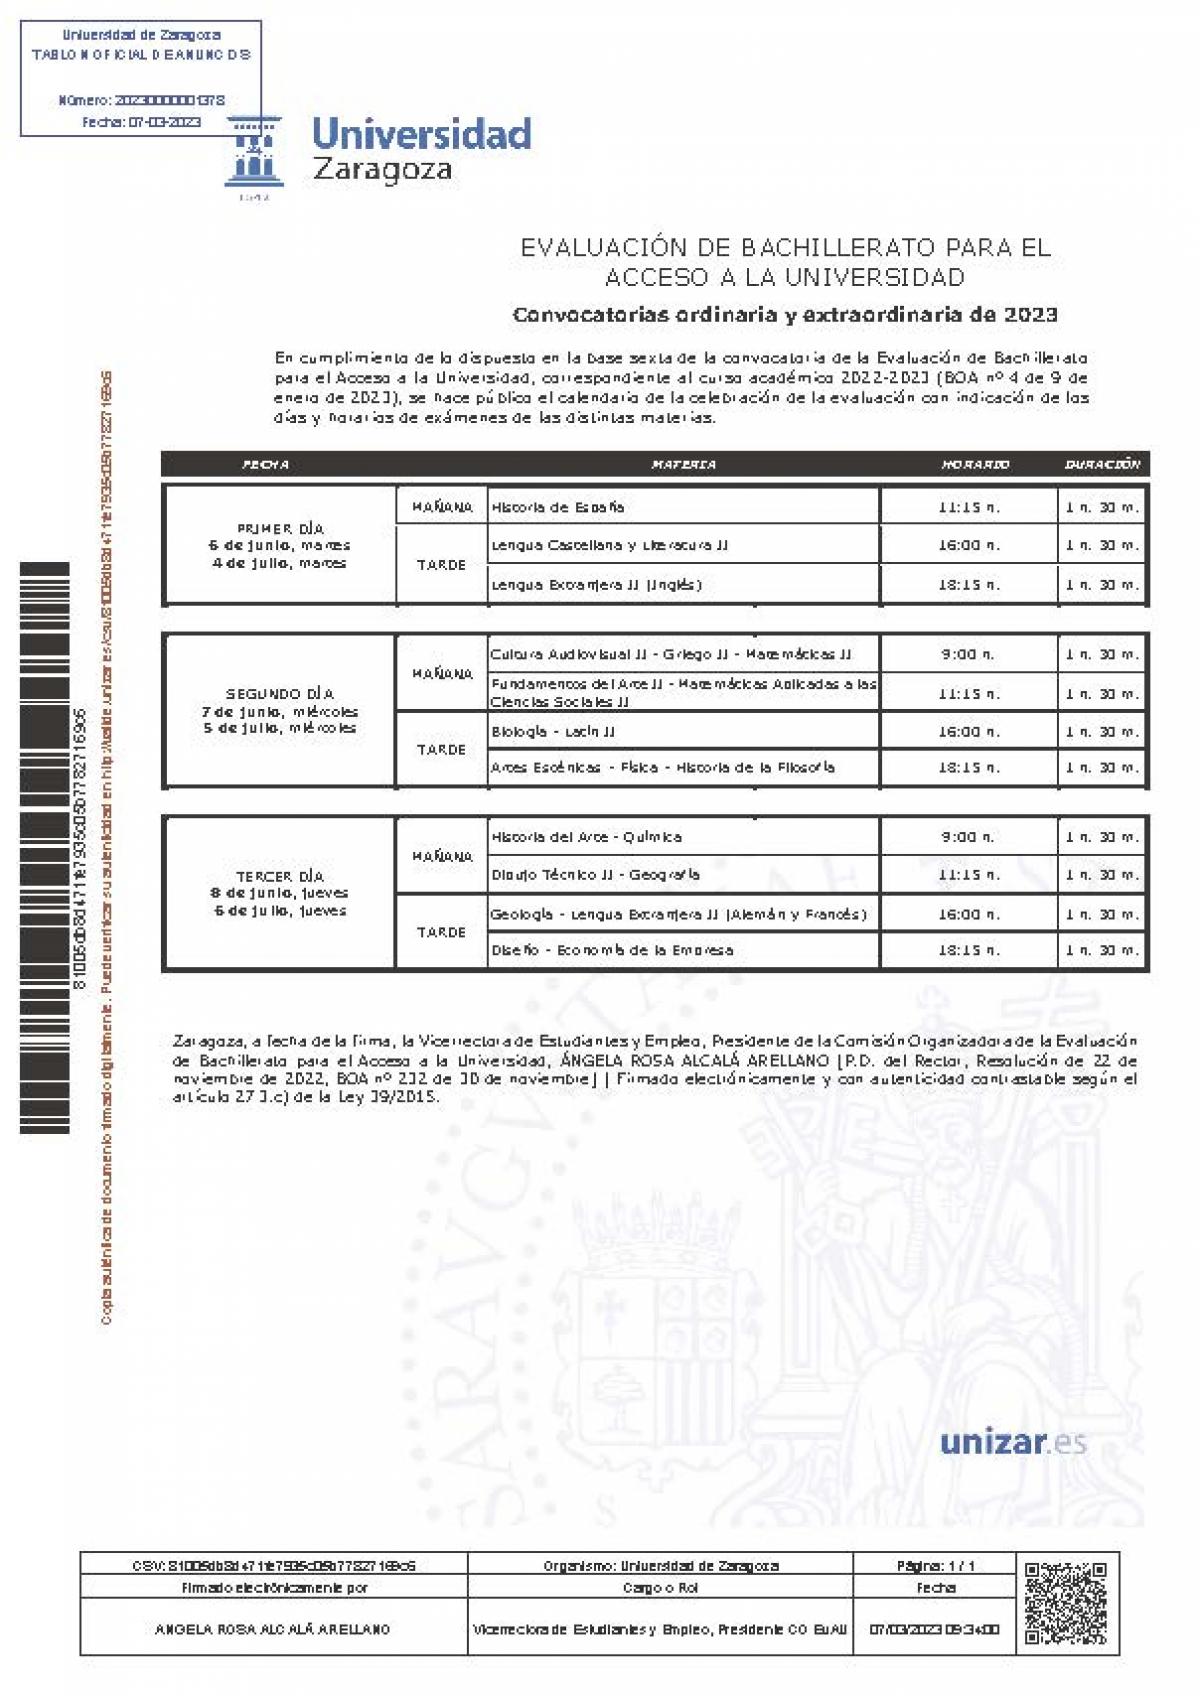 CONVOCATORIAS EVALUACION PARA ACCESO UNIVERSIDAD DE BACHILLERATO 2023